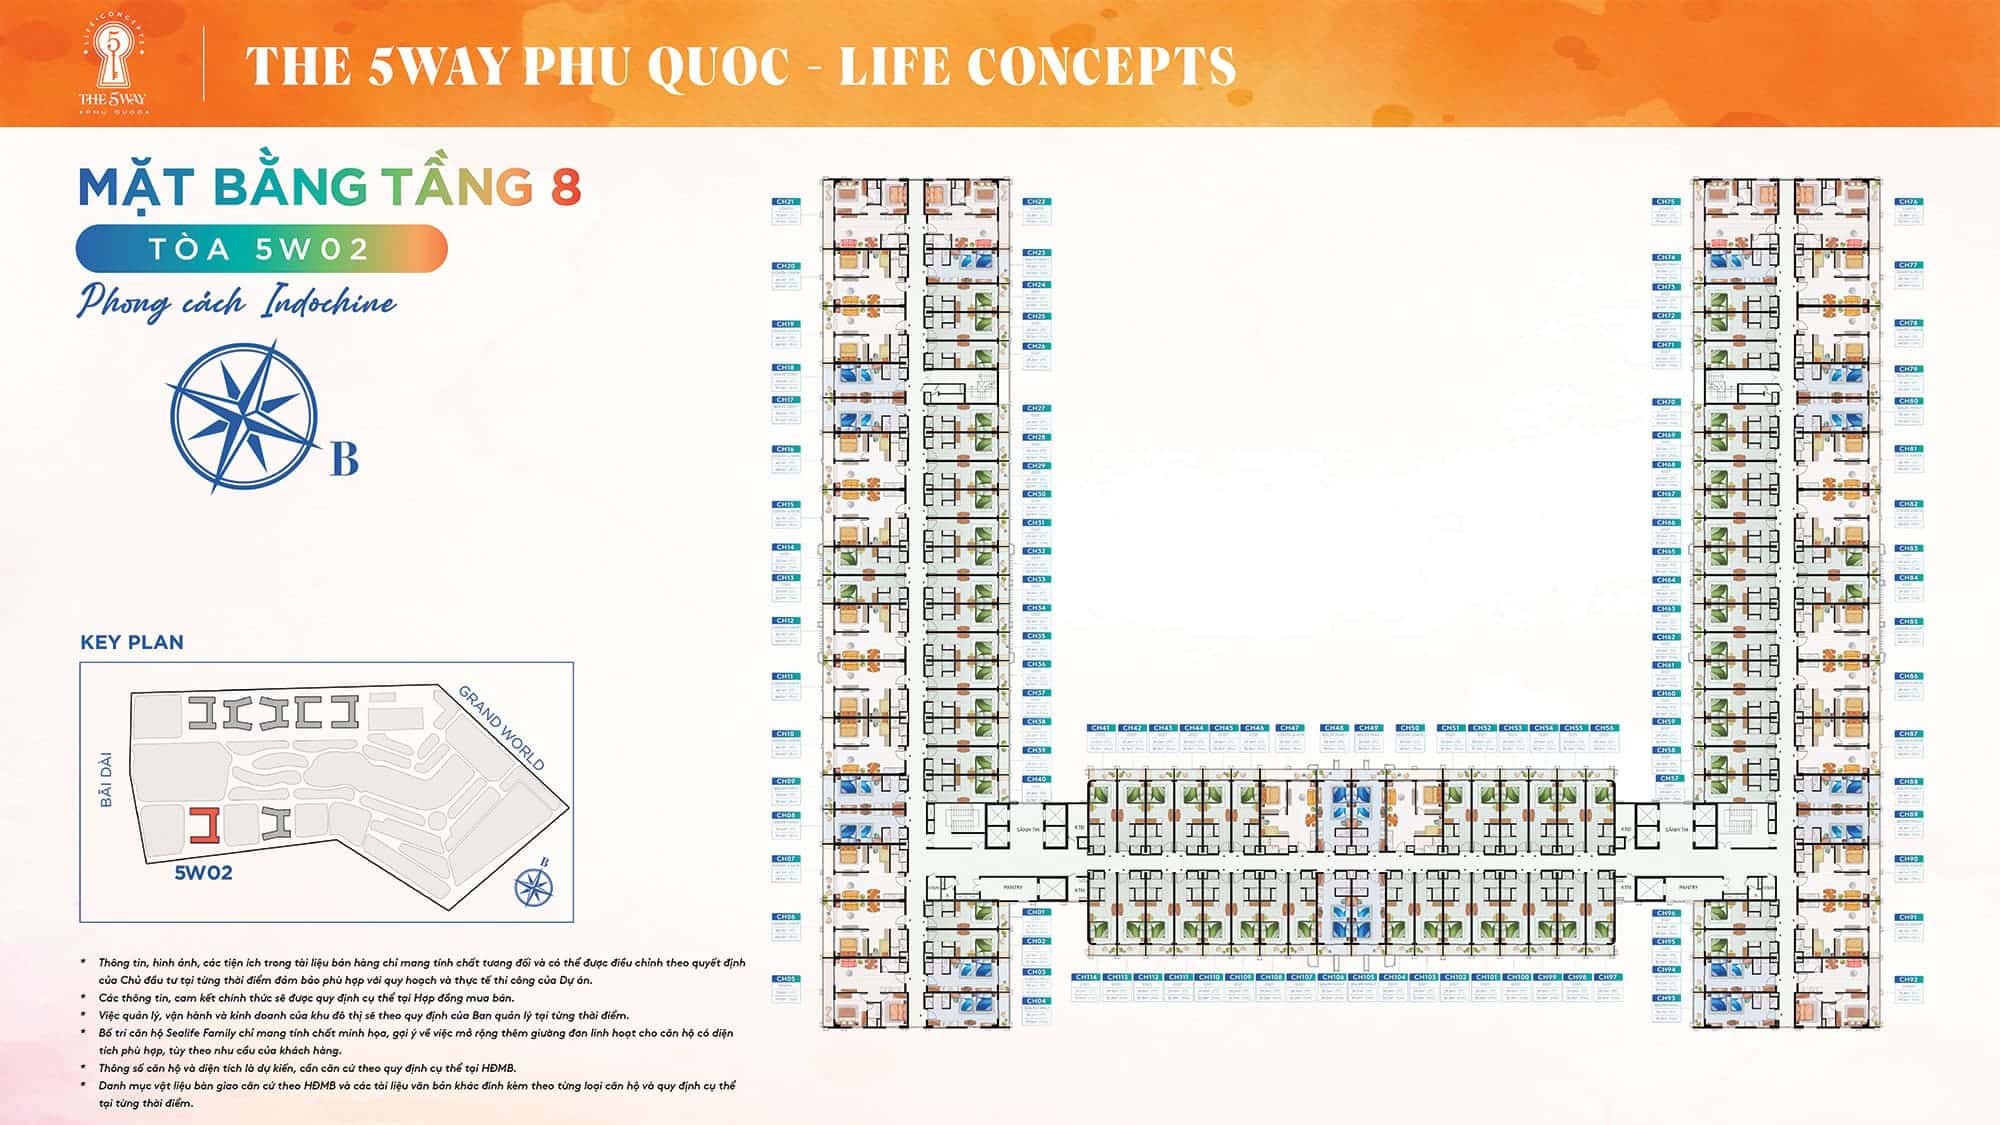 Mặt bằng Tầng 8, Tòa 5W02 phong cách Indochine thuộc dự án The 5Way - Life Concepts.